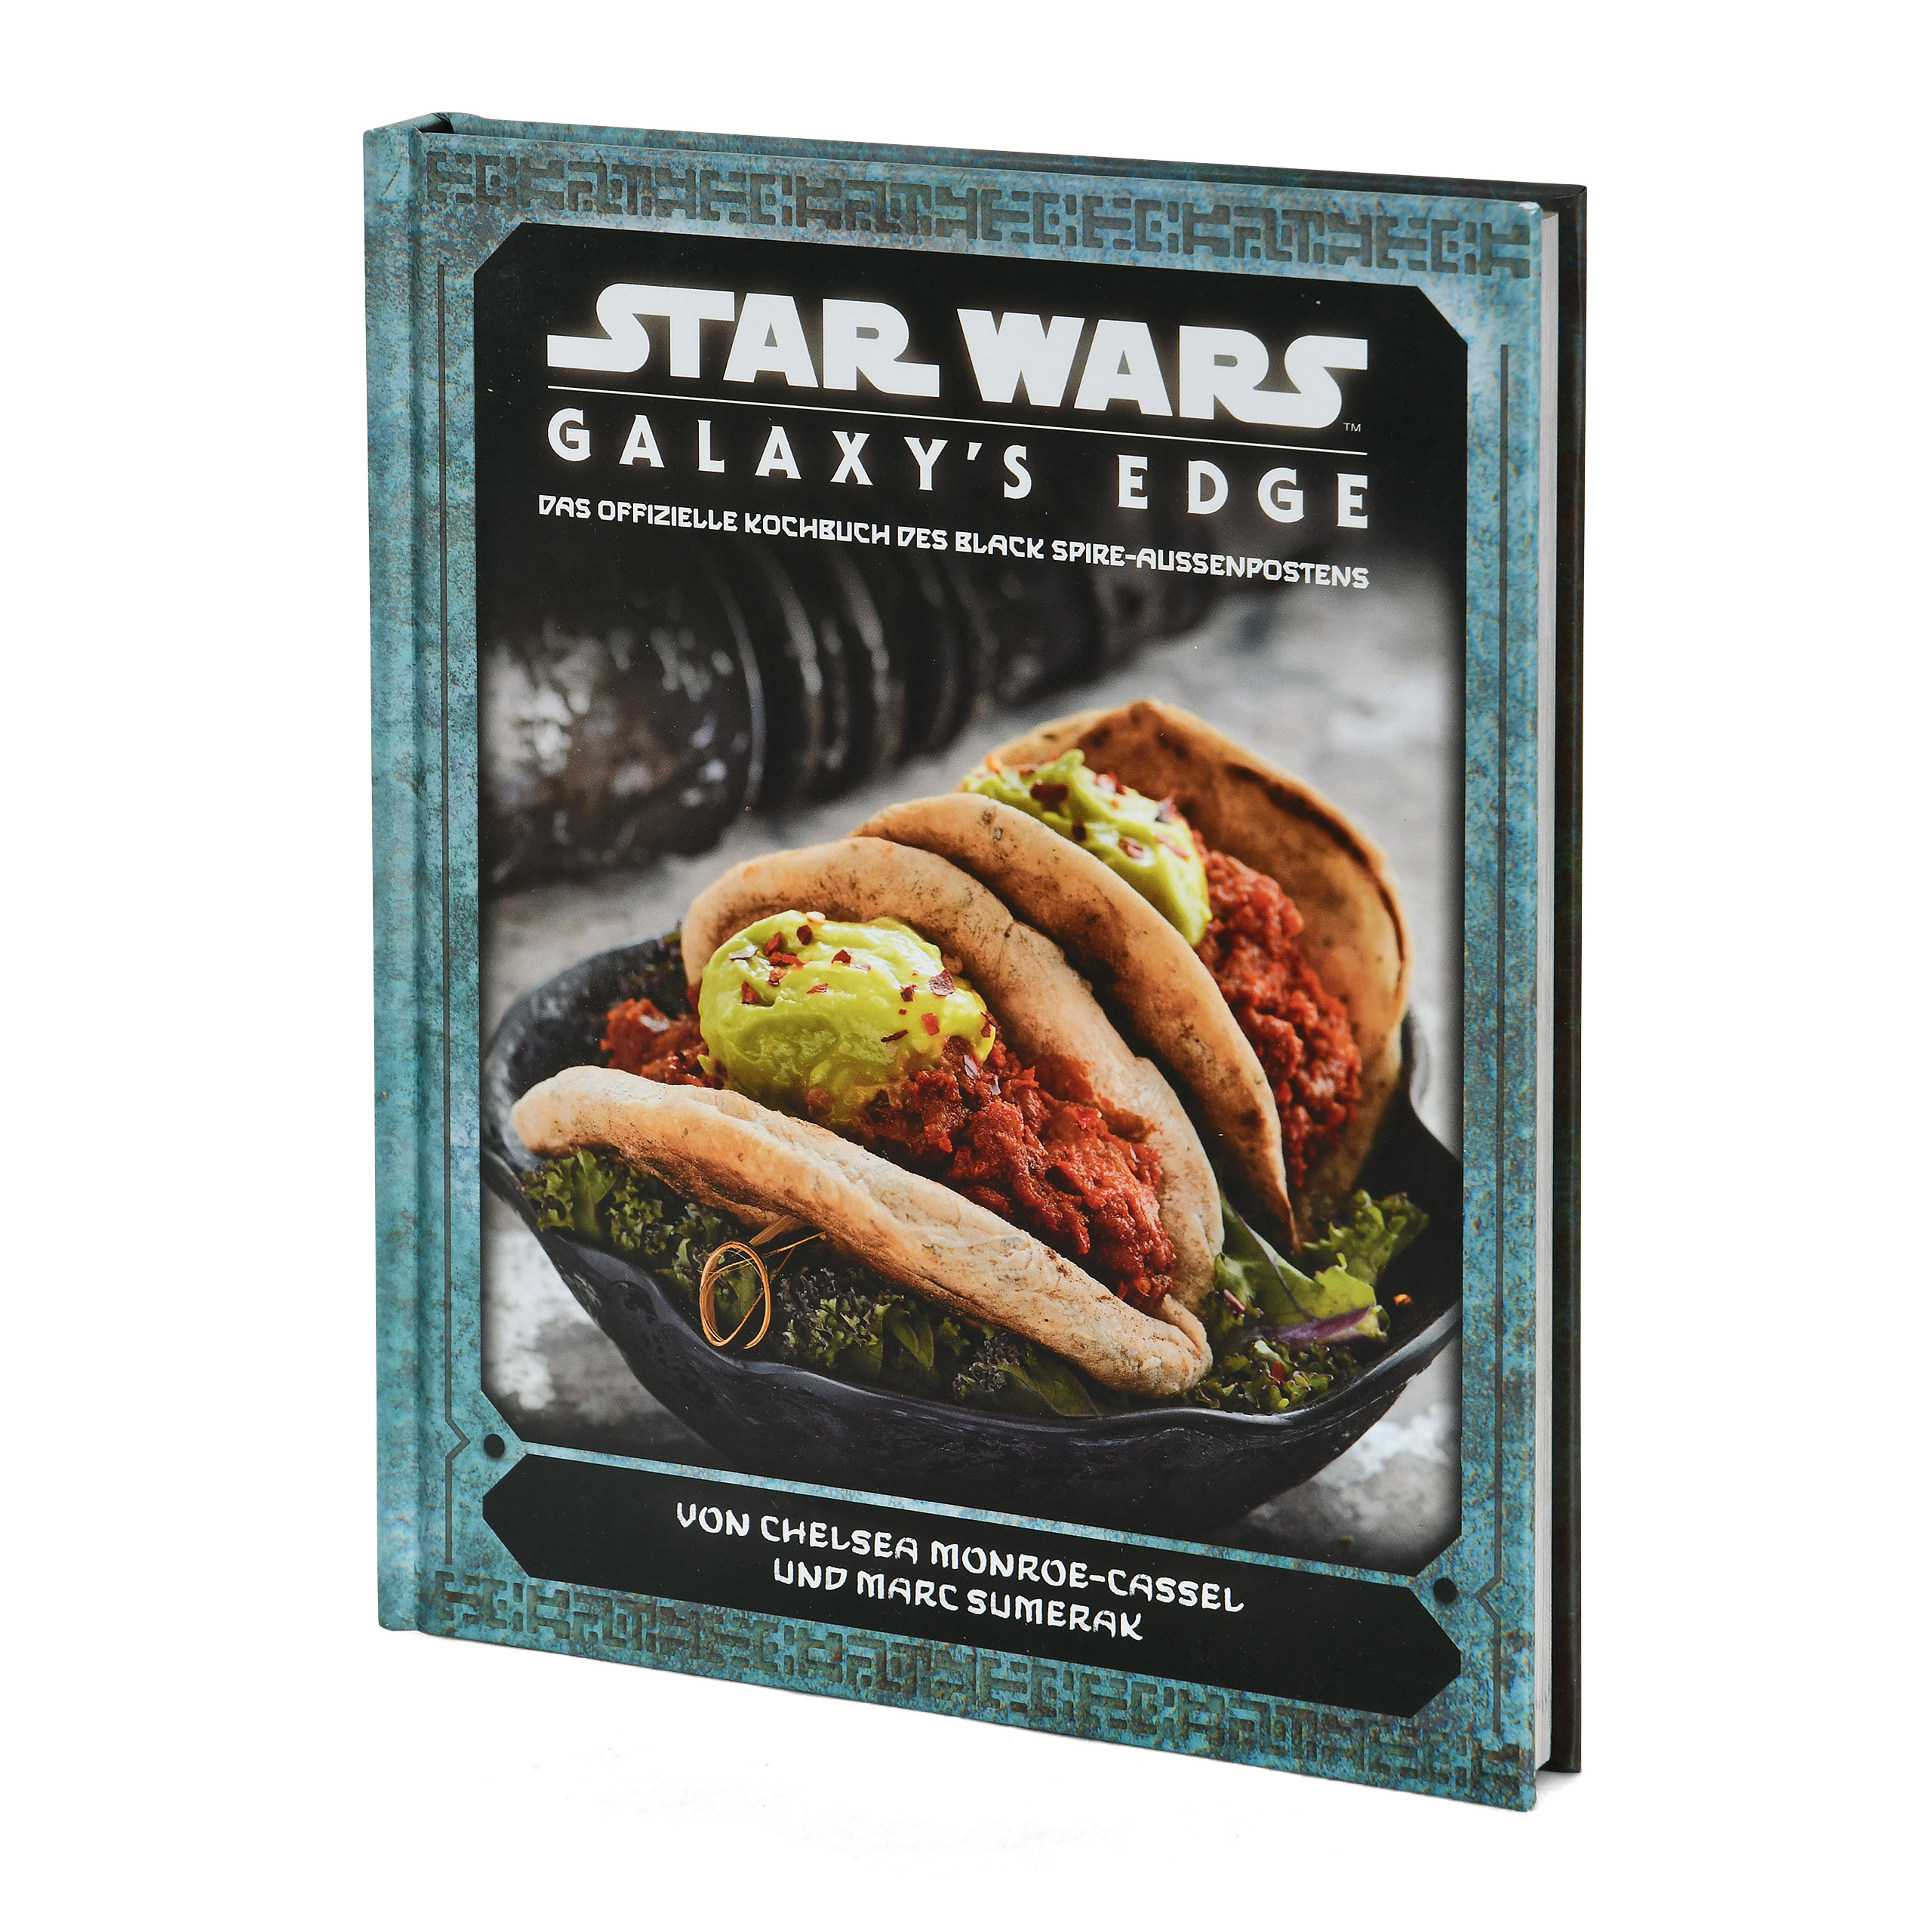 Star Wars - Galaxy's Edge Das offizielle Kochbuch des Black Spire-Außenpostens